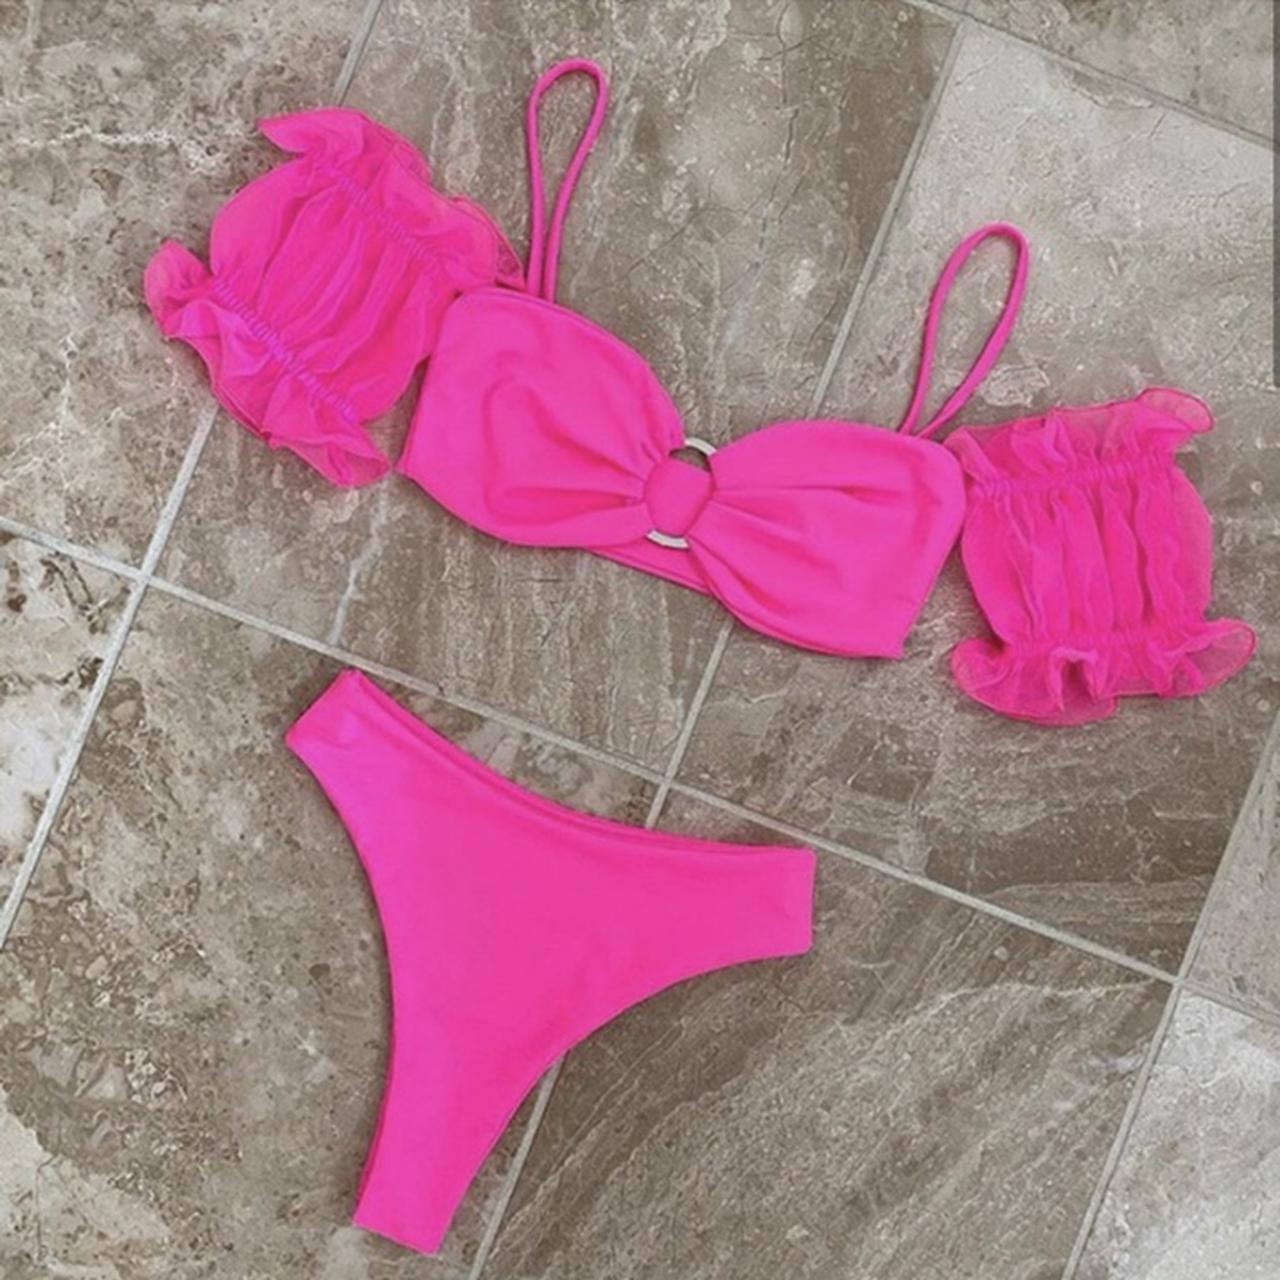 Poolkini neon pink bikini💓hasn’t been worn as it... - Depop